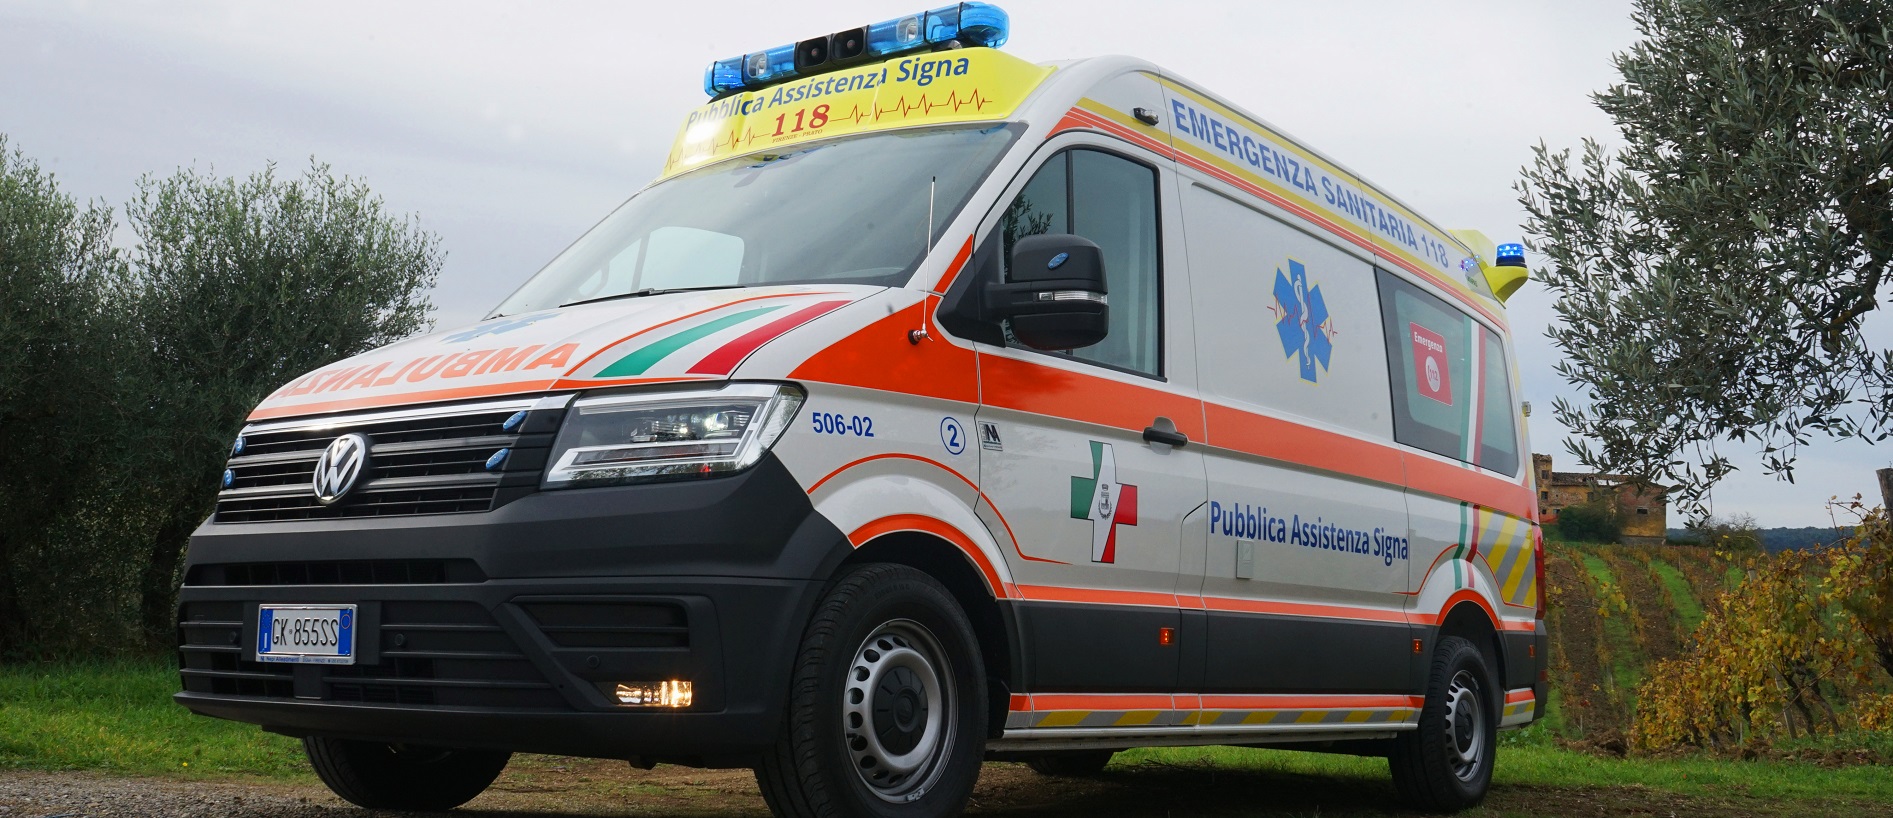 Le ambulanze in servizio